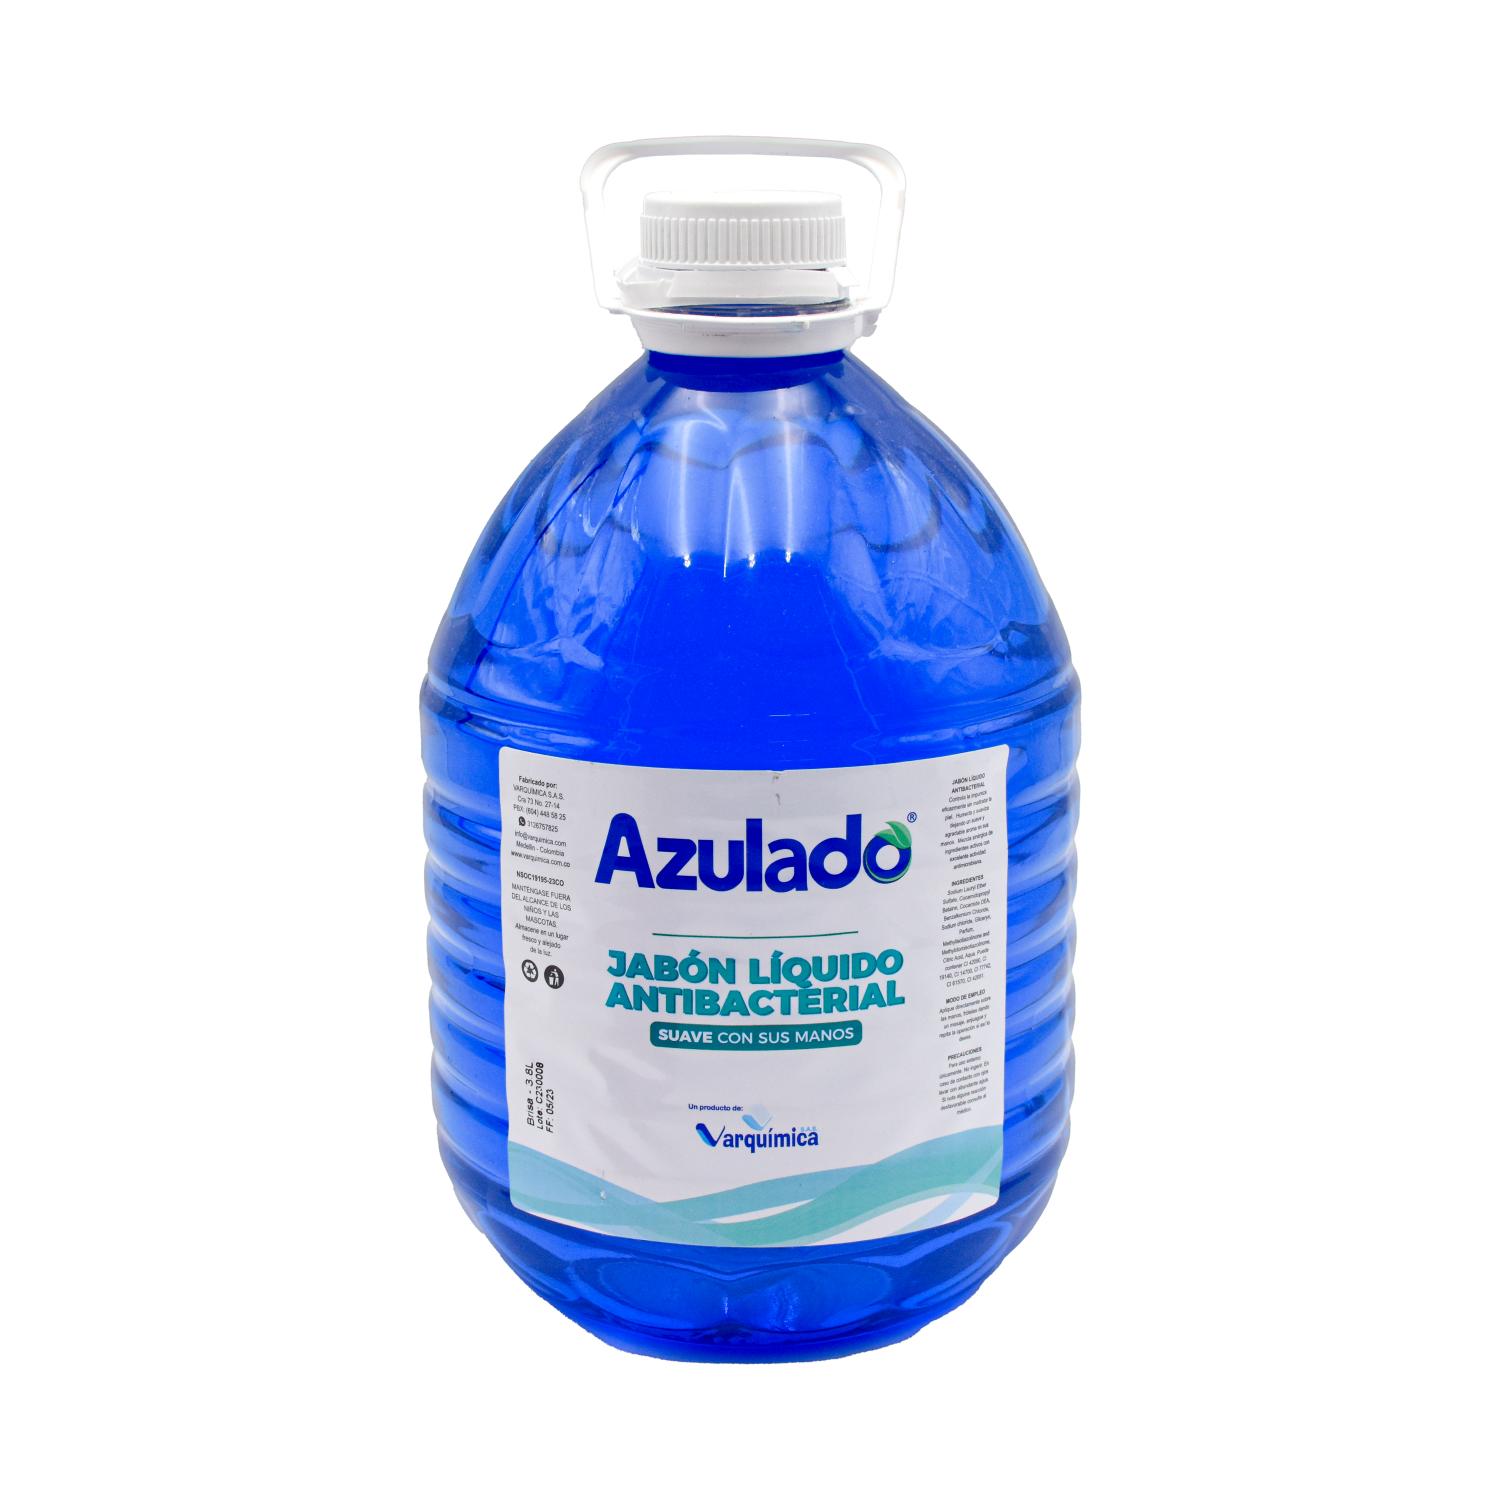 Jabon Manos Antibact Galon Brisa Azulado (4)